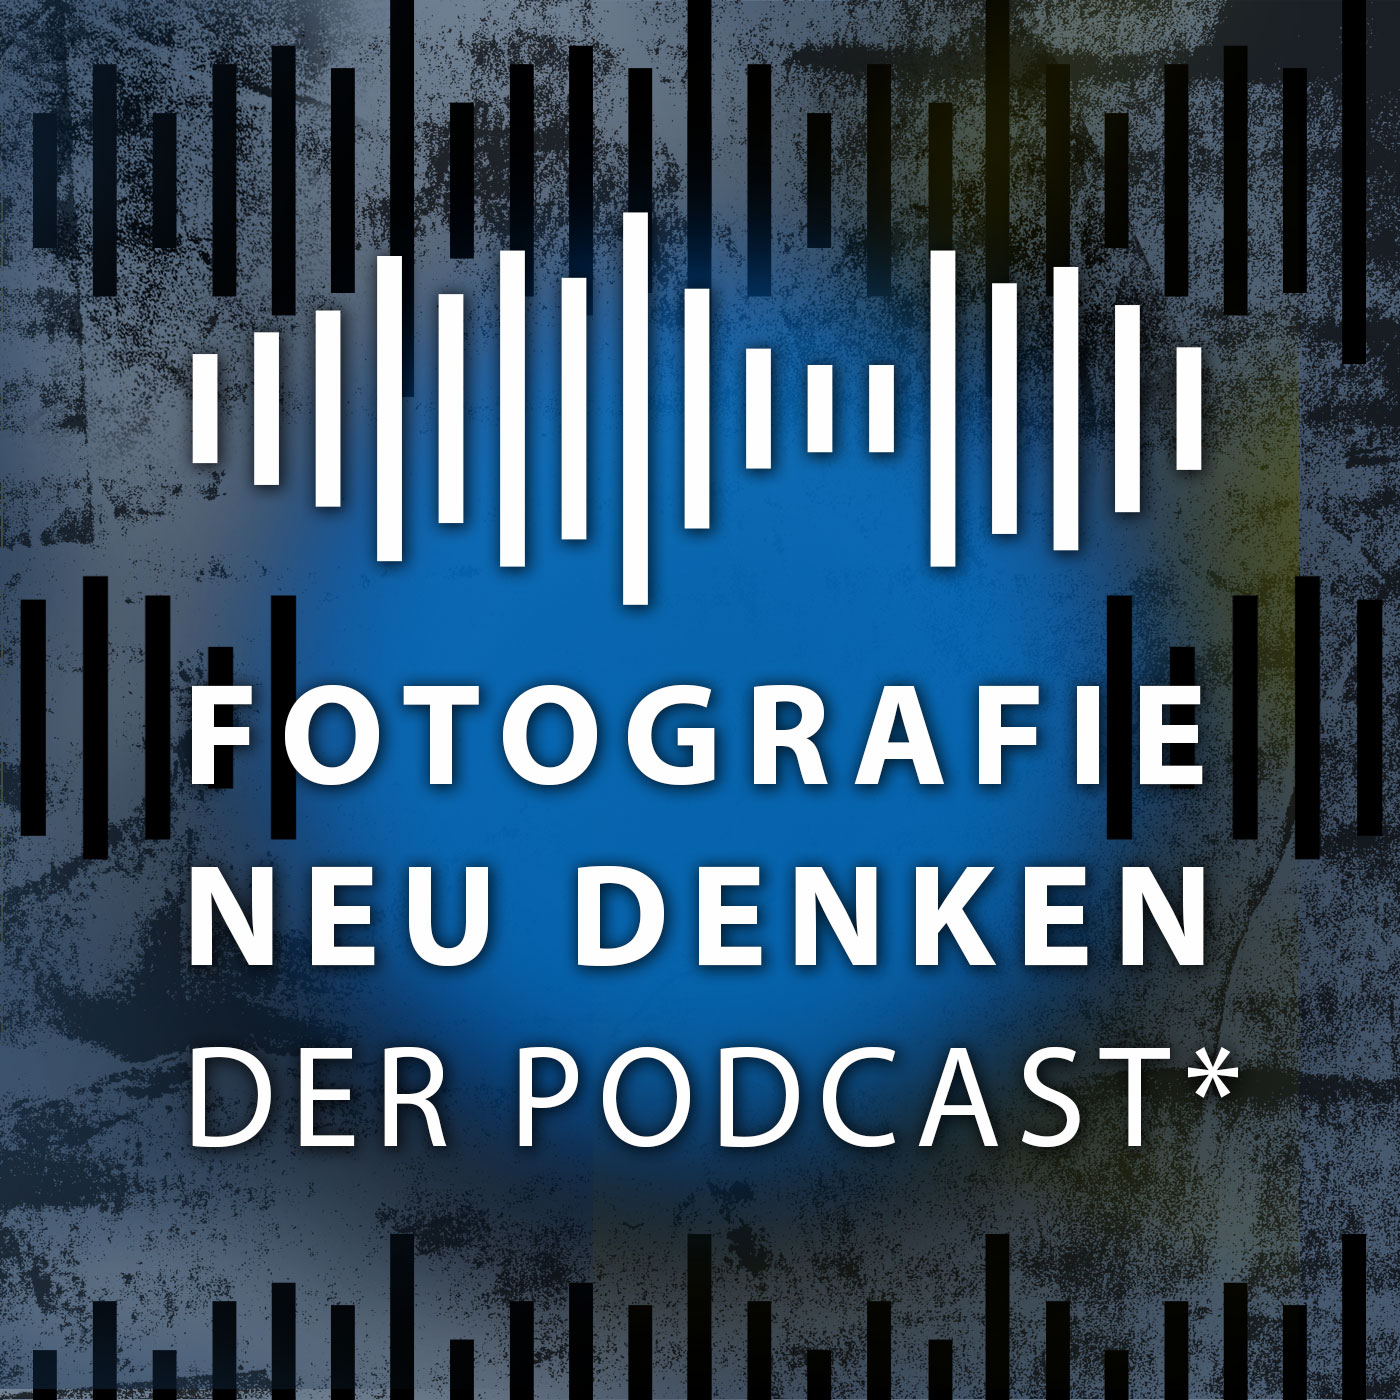 Fotografie Neu Denken. Der Podcast.